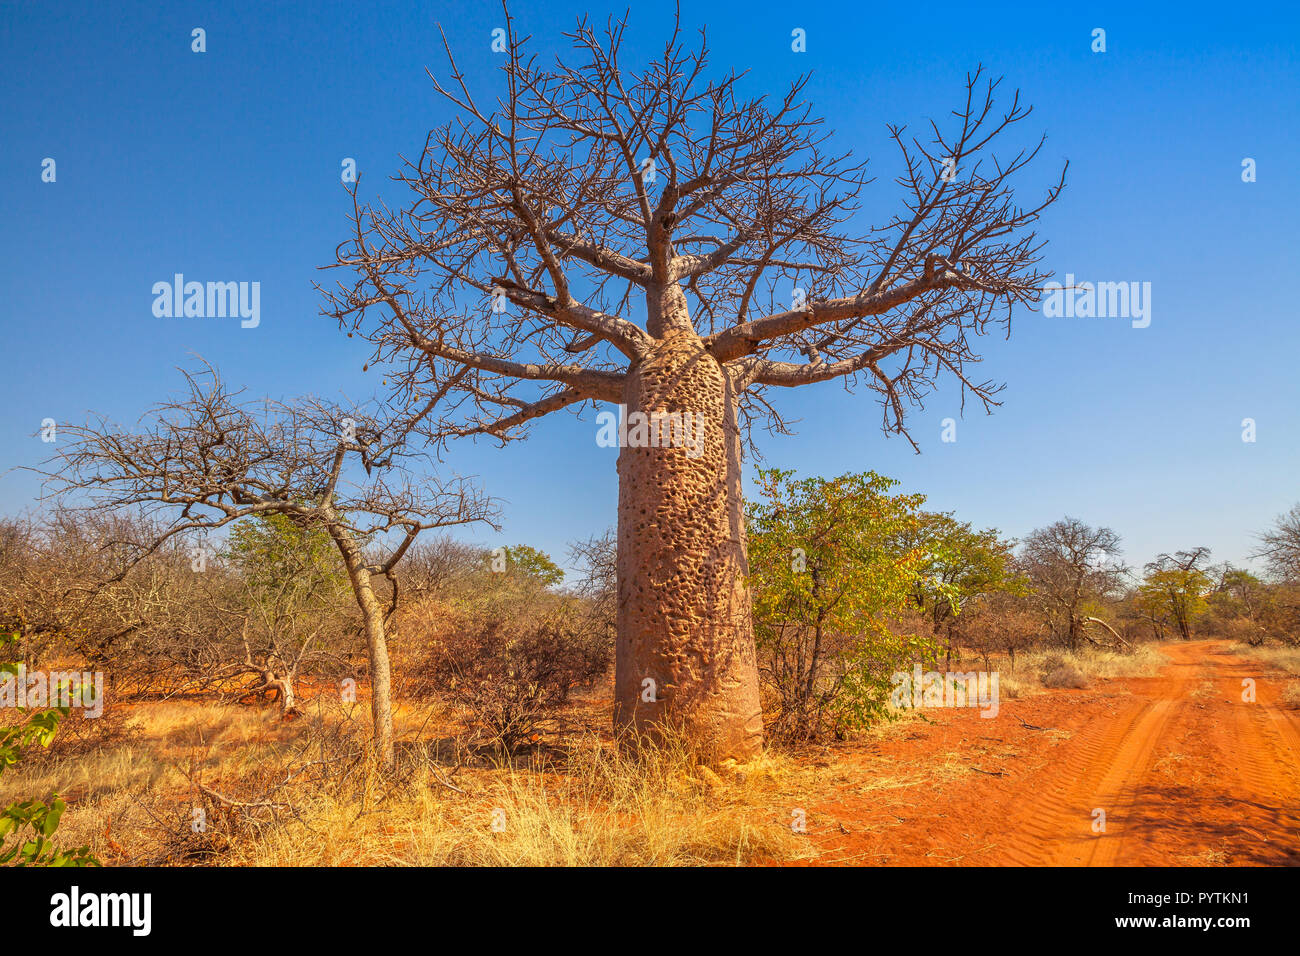 Baobab également connu sous le nom de pain de singe arbres, tabaldi ou bouteille à Musina, arbres Nature Reserve, l'une des plus importantes collections de baobabs en Afrique du Sud. Jeu du Limpopo et réserves naturelles. Banque D'Images